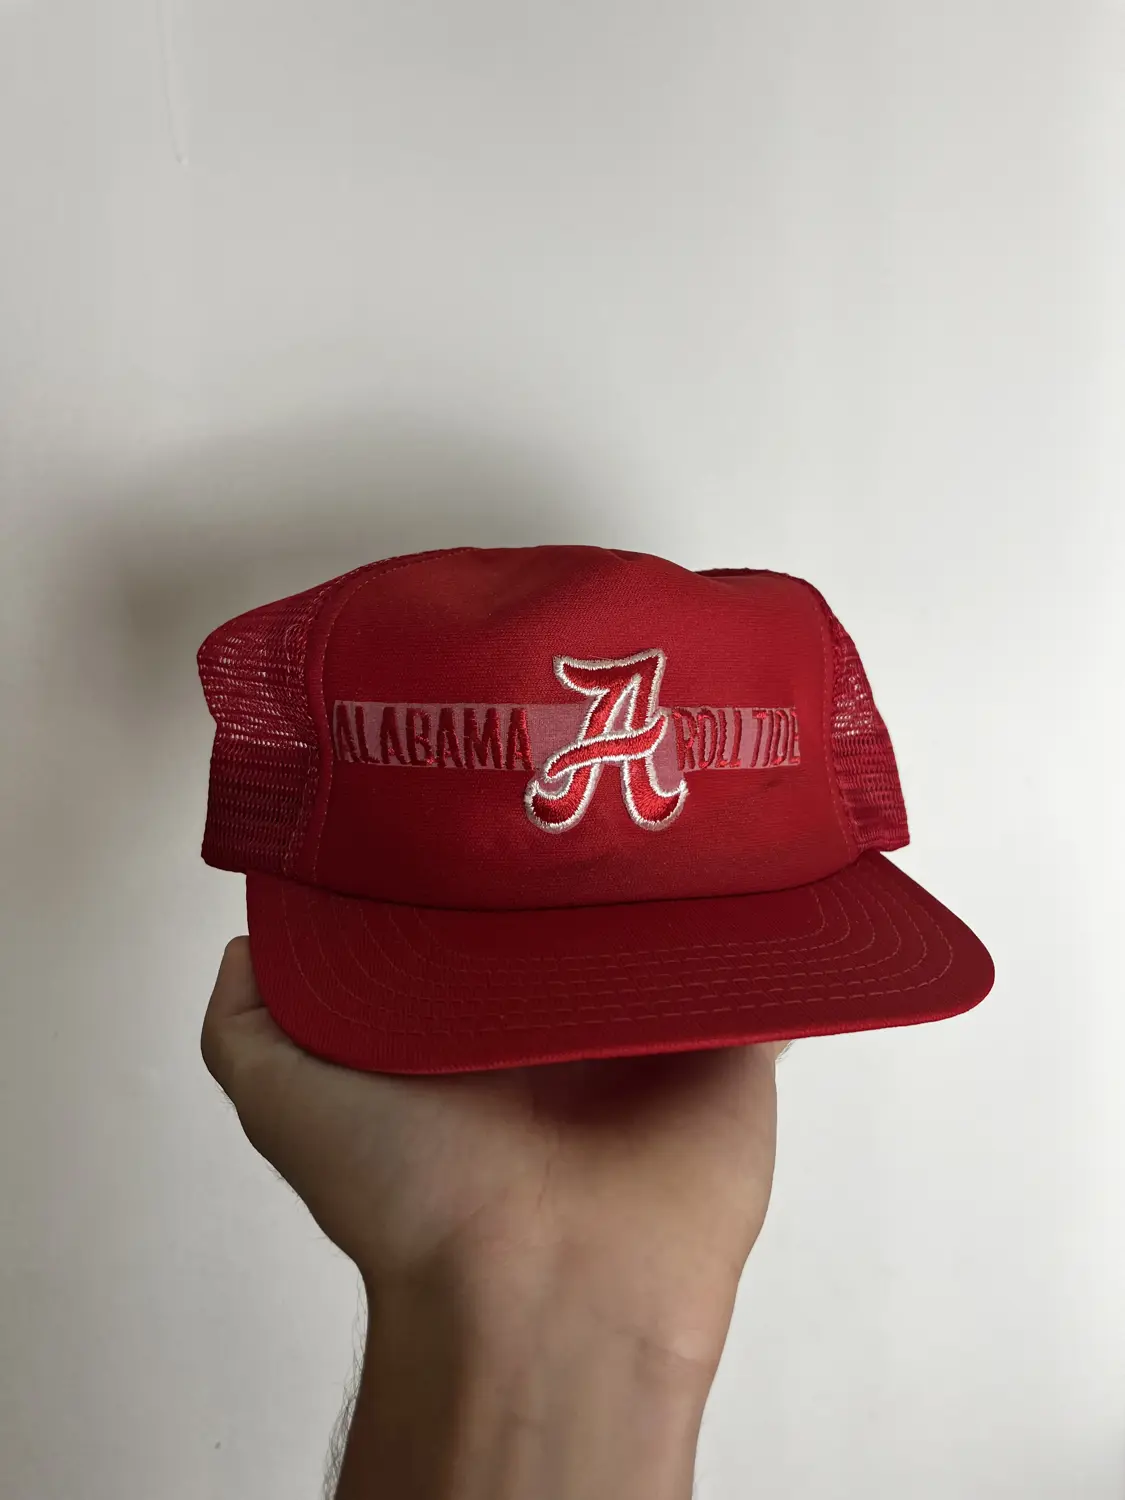 Vintage Alabama Hat